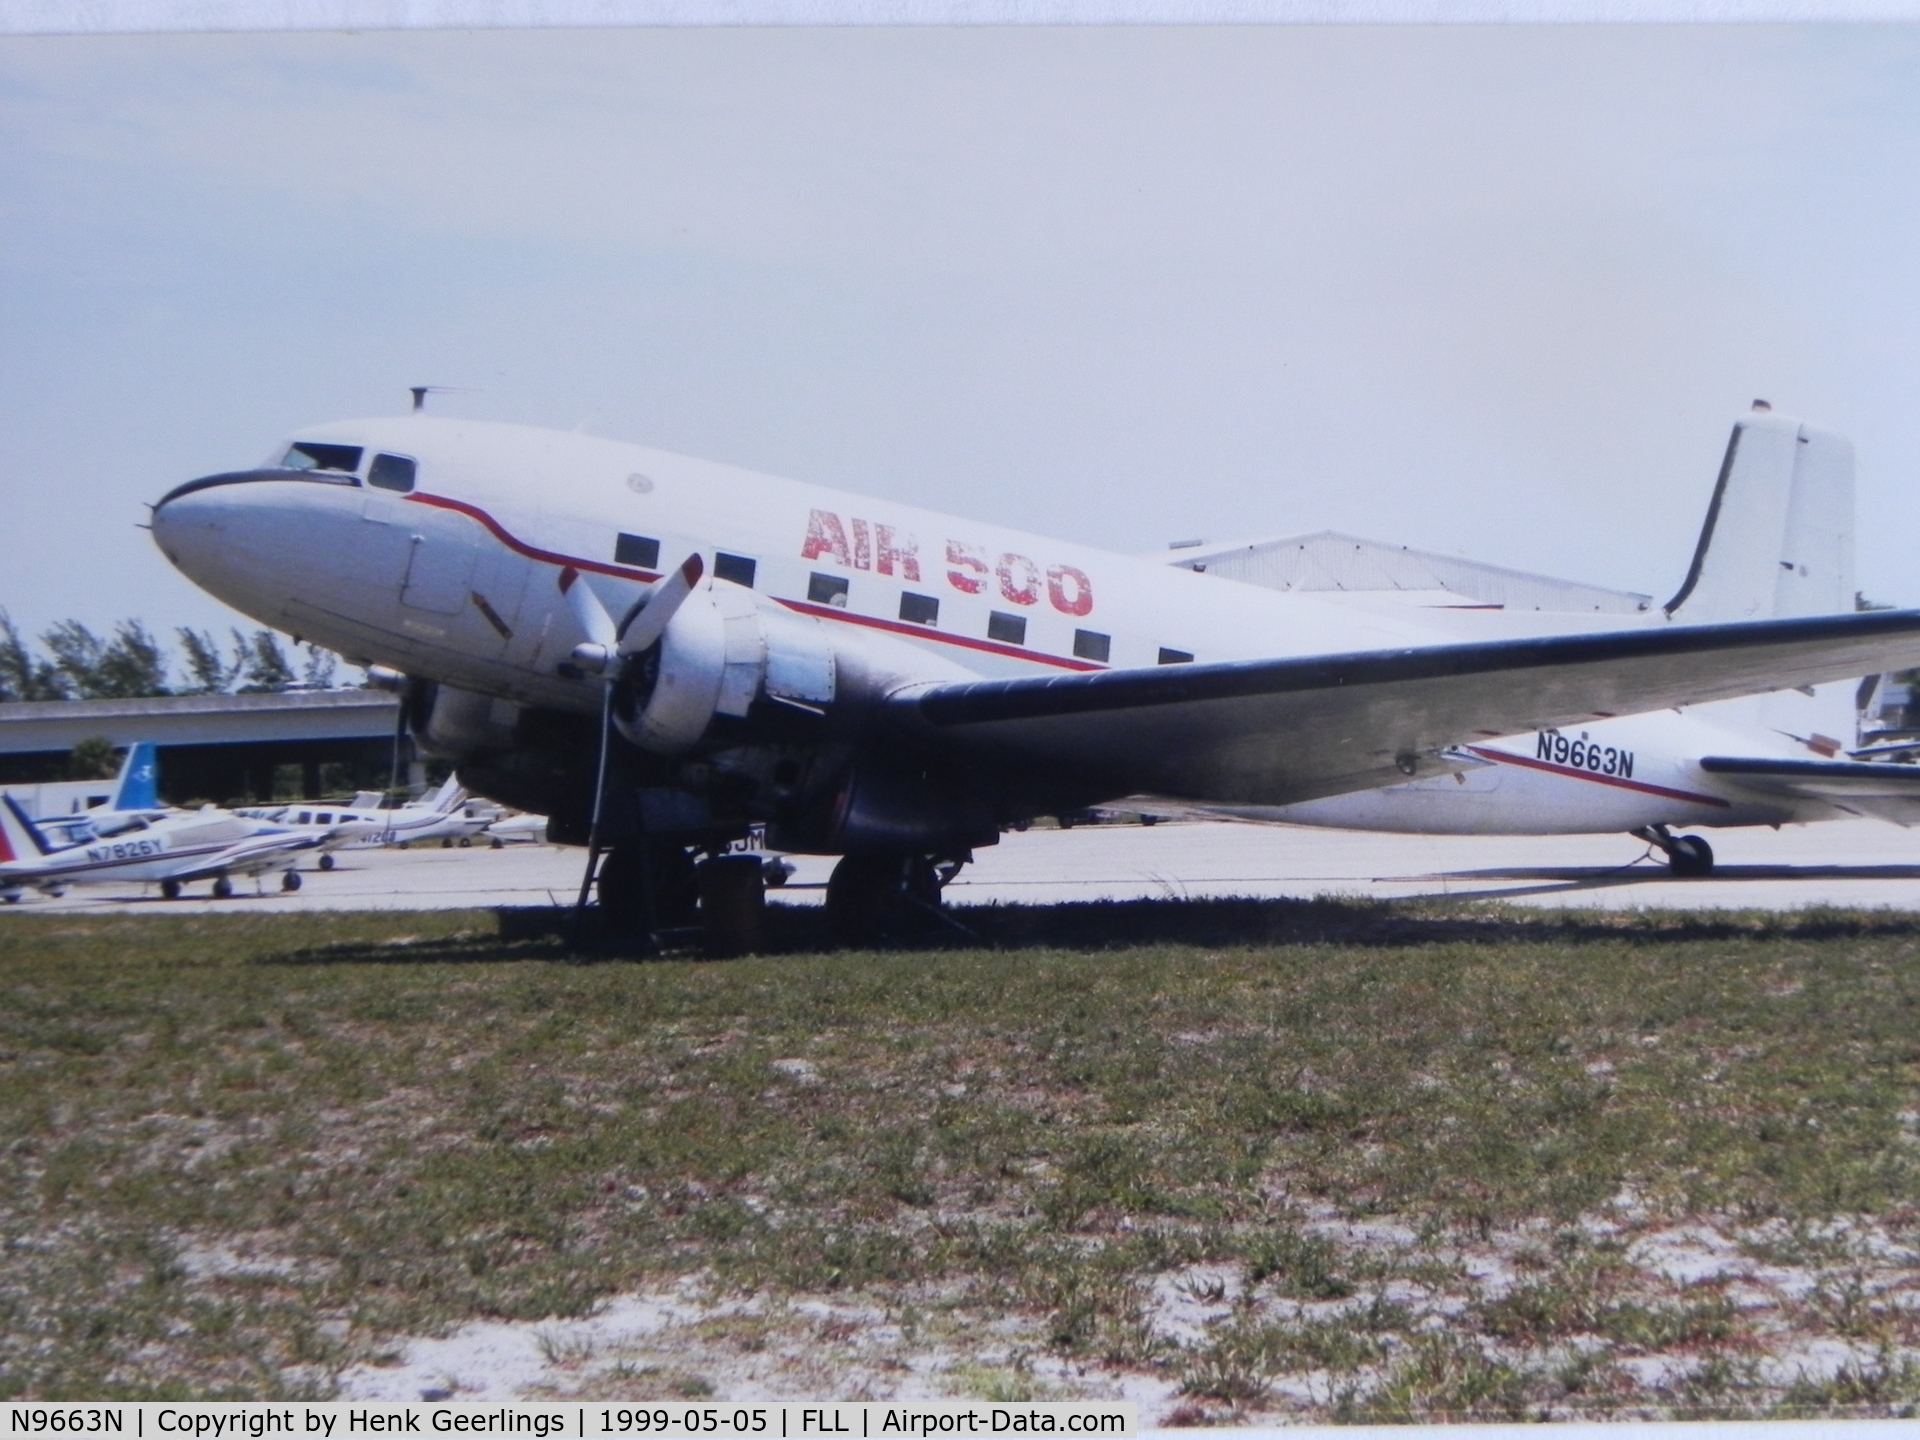 N9663N, 1953 Douglas C-117D C/N 43385, Air 500

Scan from photo taken in May 1999